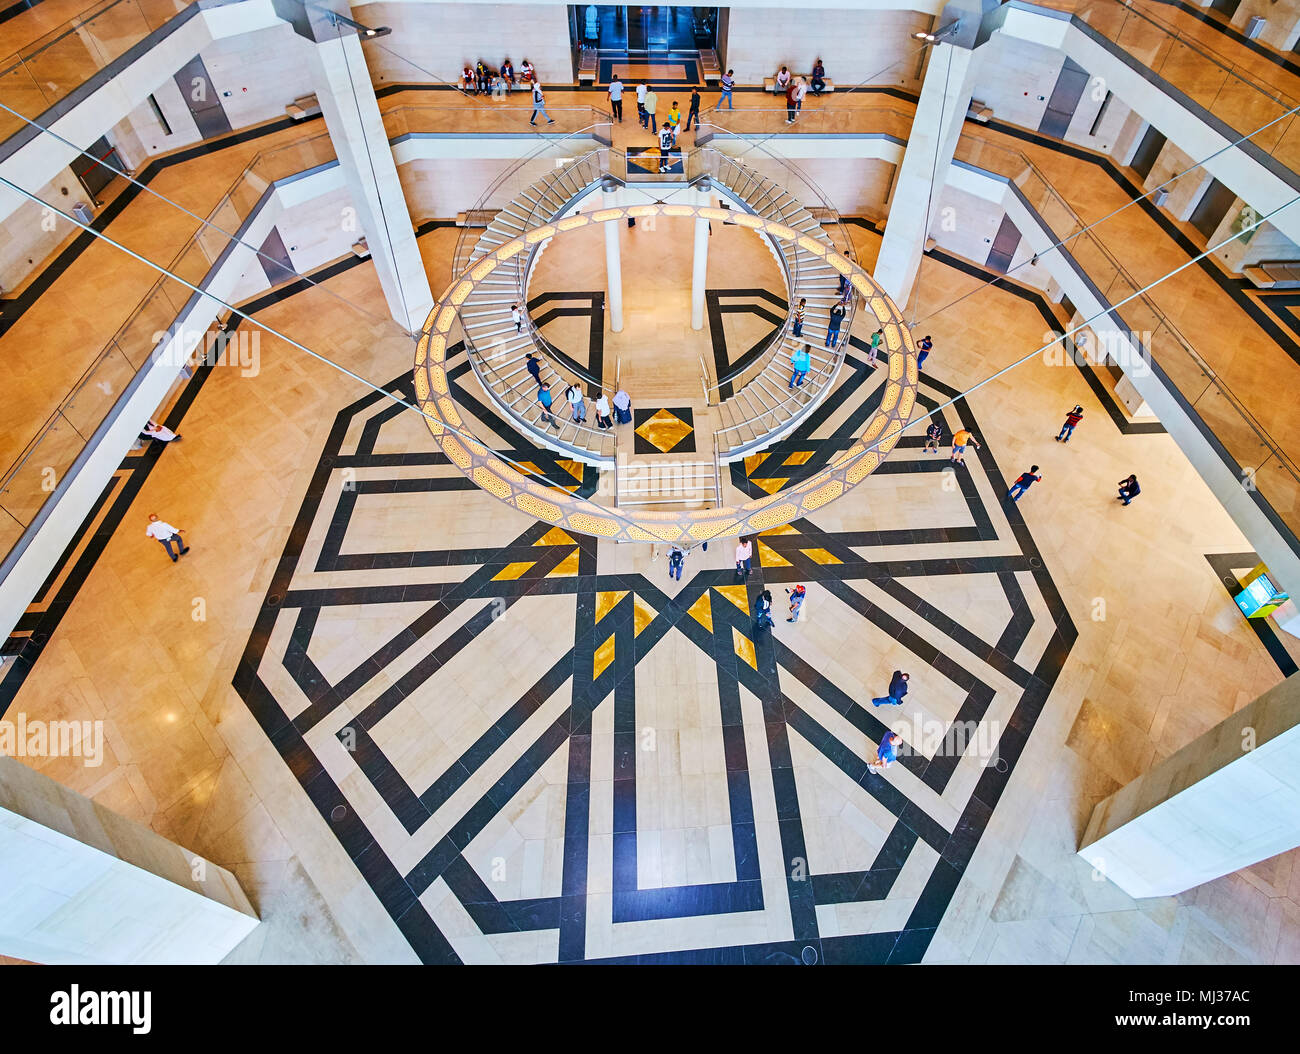 DOHA, QATAR - février 13, 2018 : La revanche de lustre circulaire et escaliers en demi-rond avec motif carreaux stellaire sur le plancher de l'Art Islamique Banque D'Images